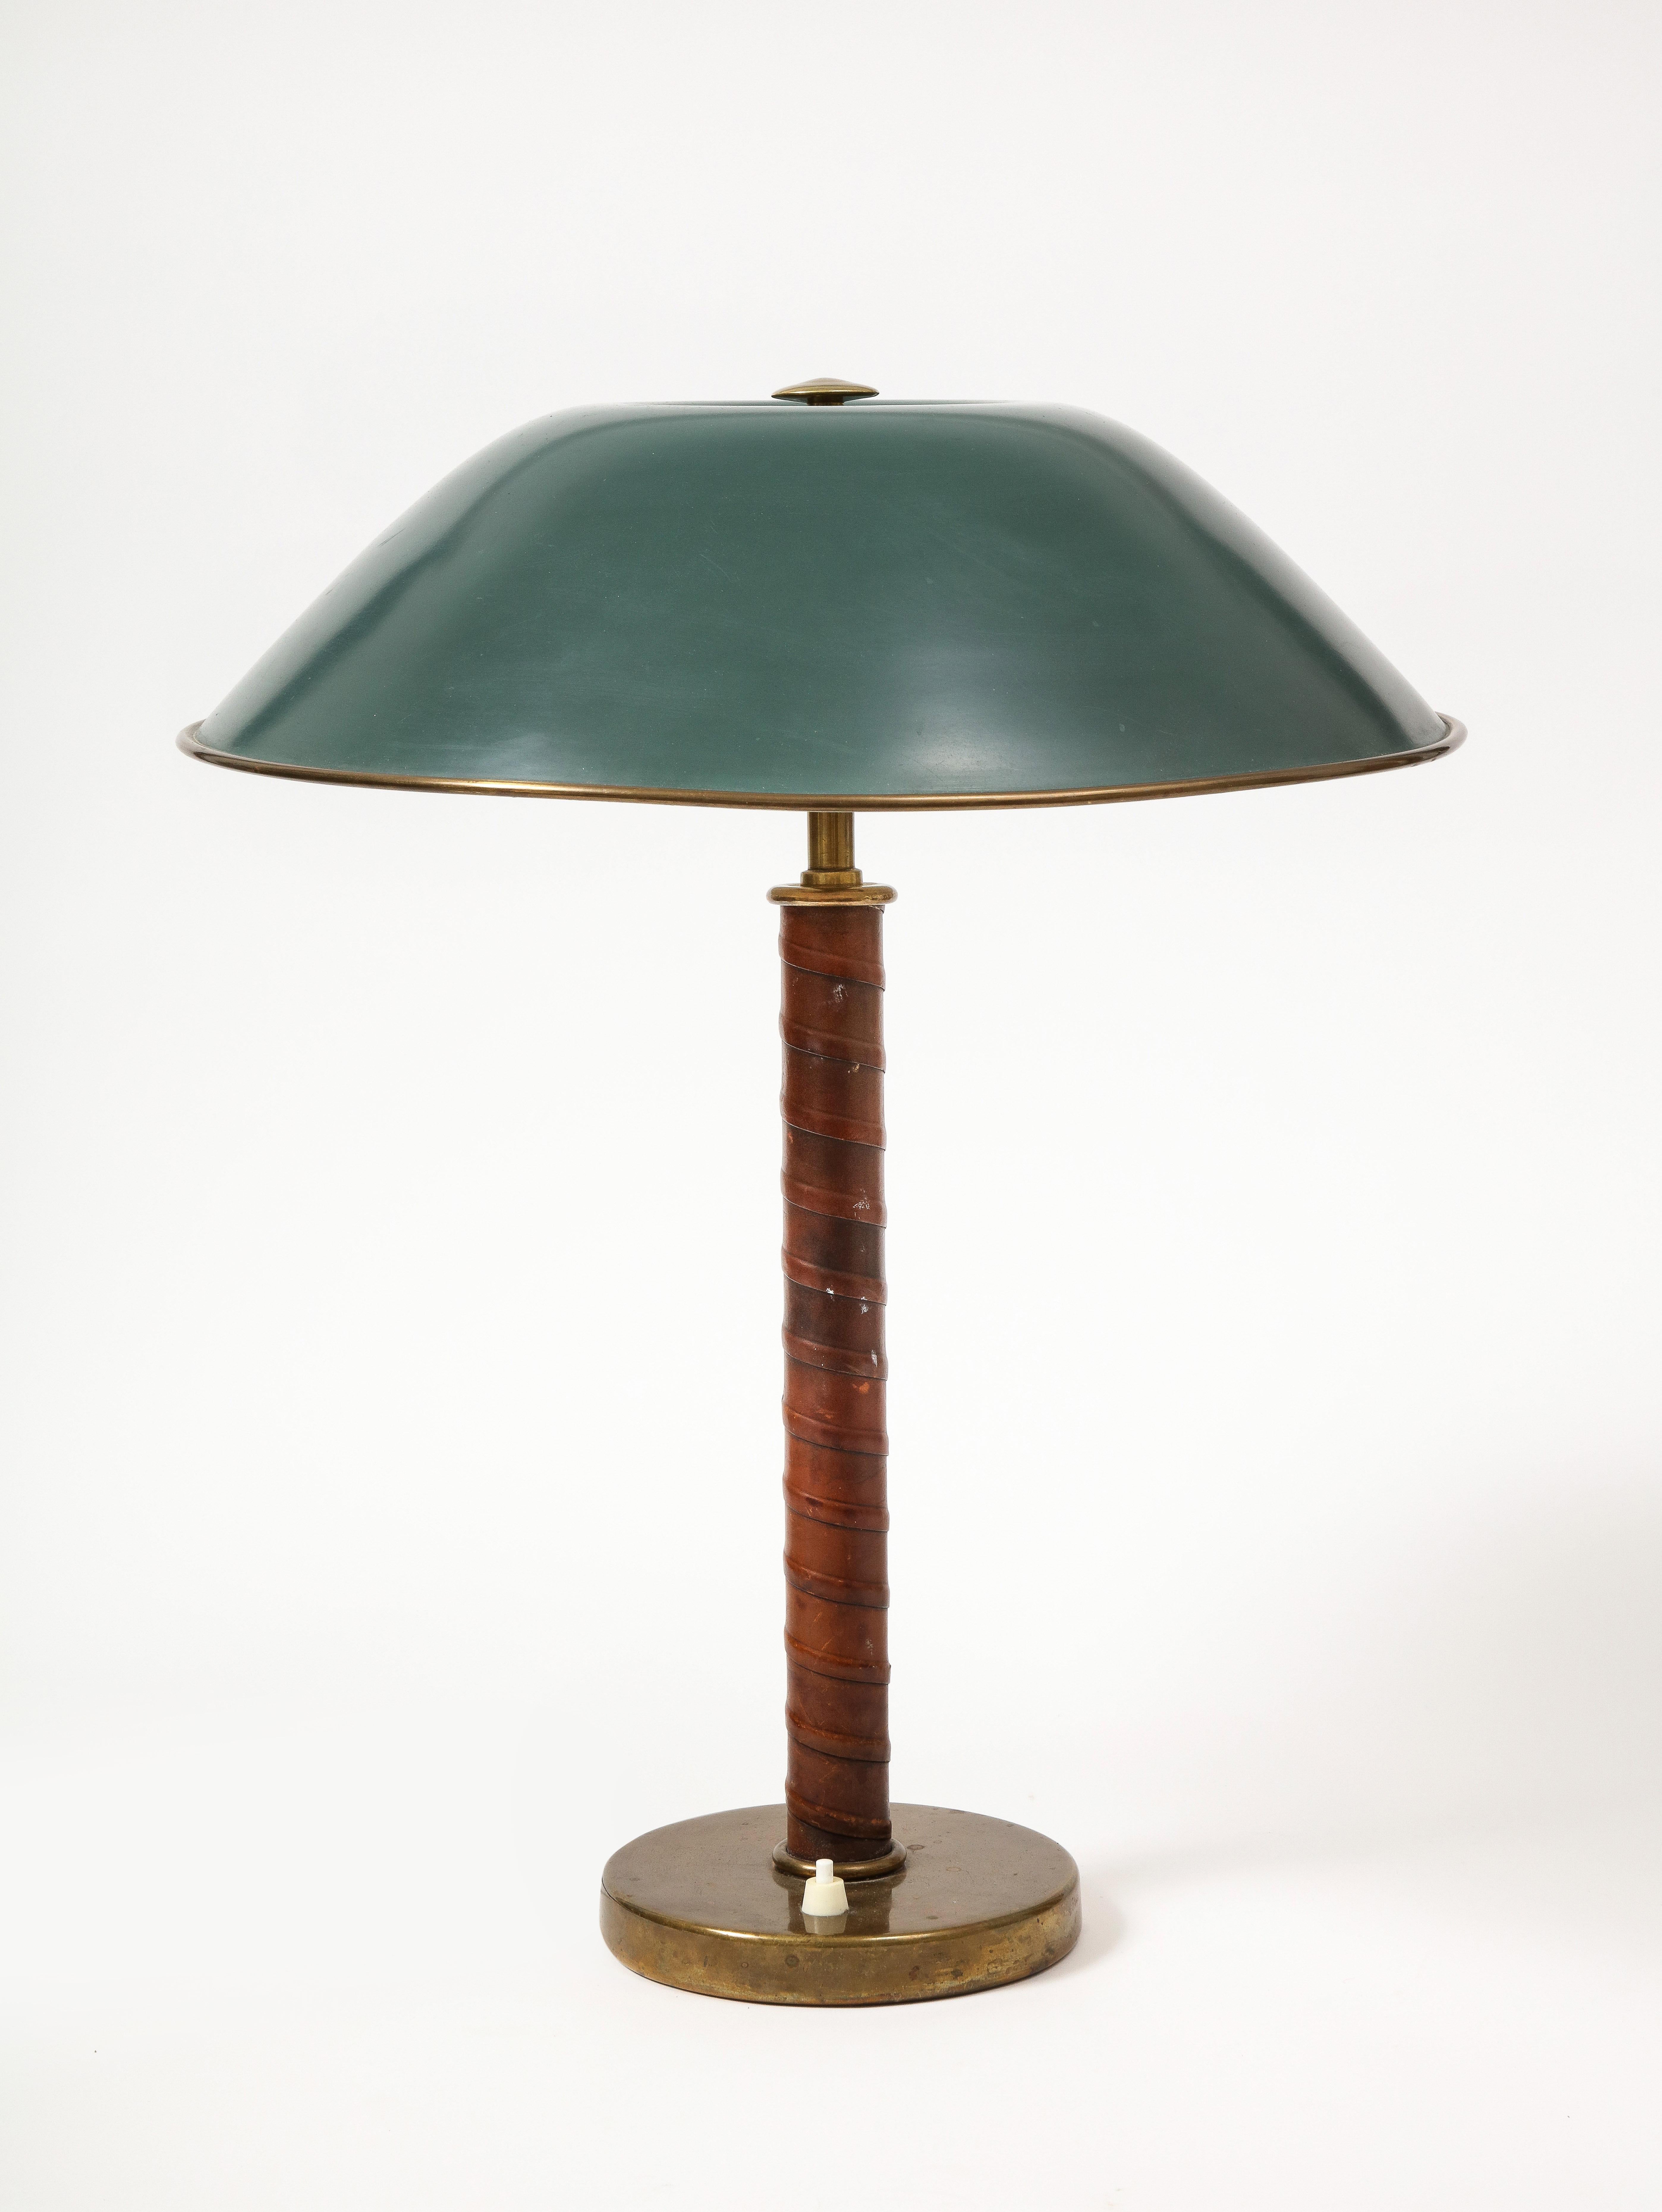 Schwedische Tischleuchte Grace aus Leder, Messing und lackiertem Messing, hergestellt von Bohlmarks. Diese Lampe hat einen umwickelten Lederkörper und einen großen, schön patinierten grünen Schirm.